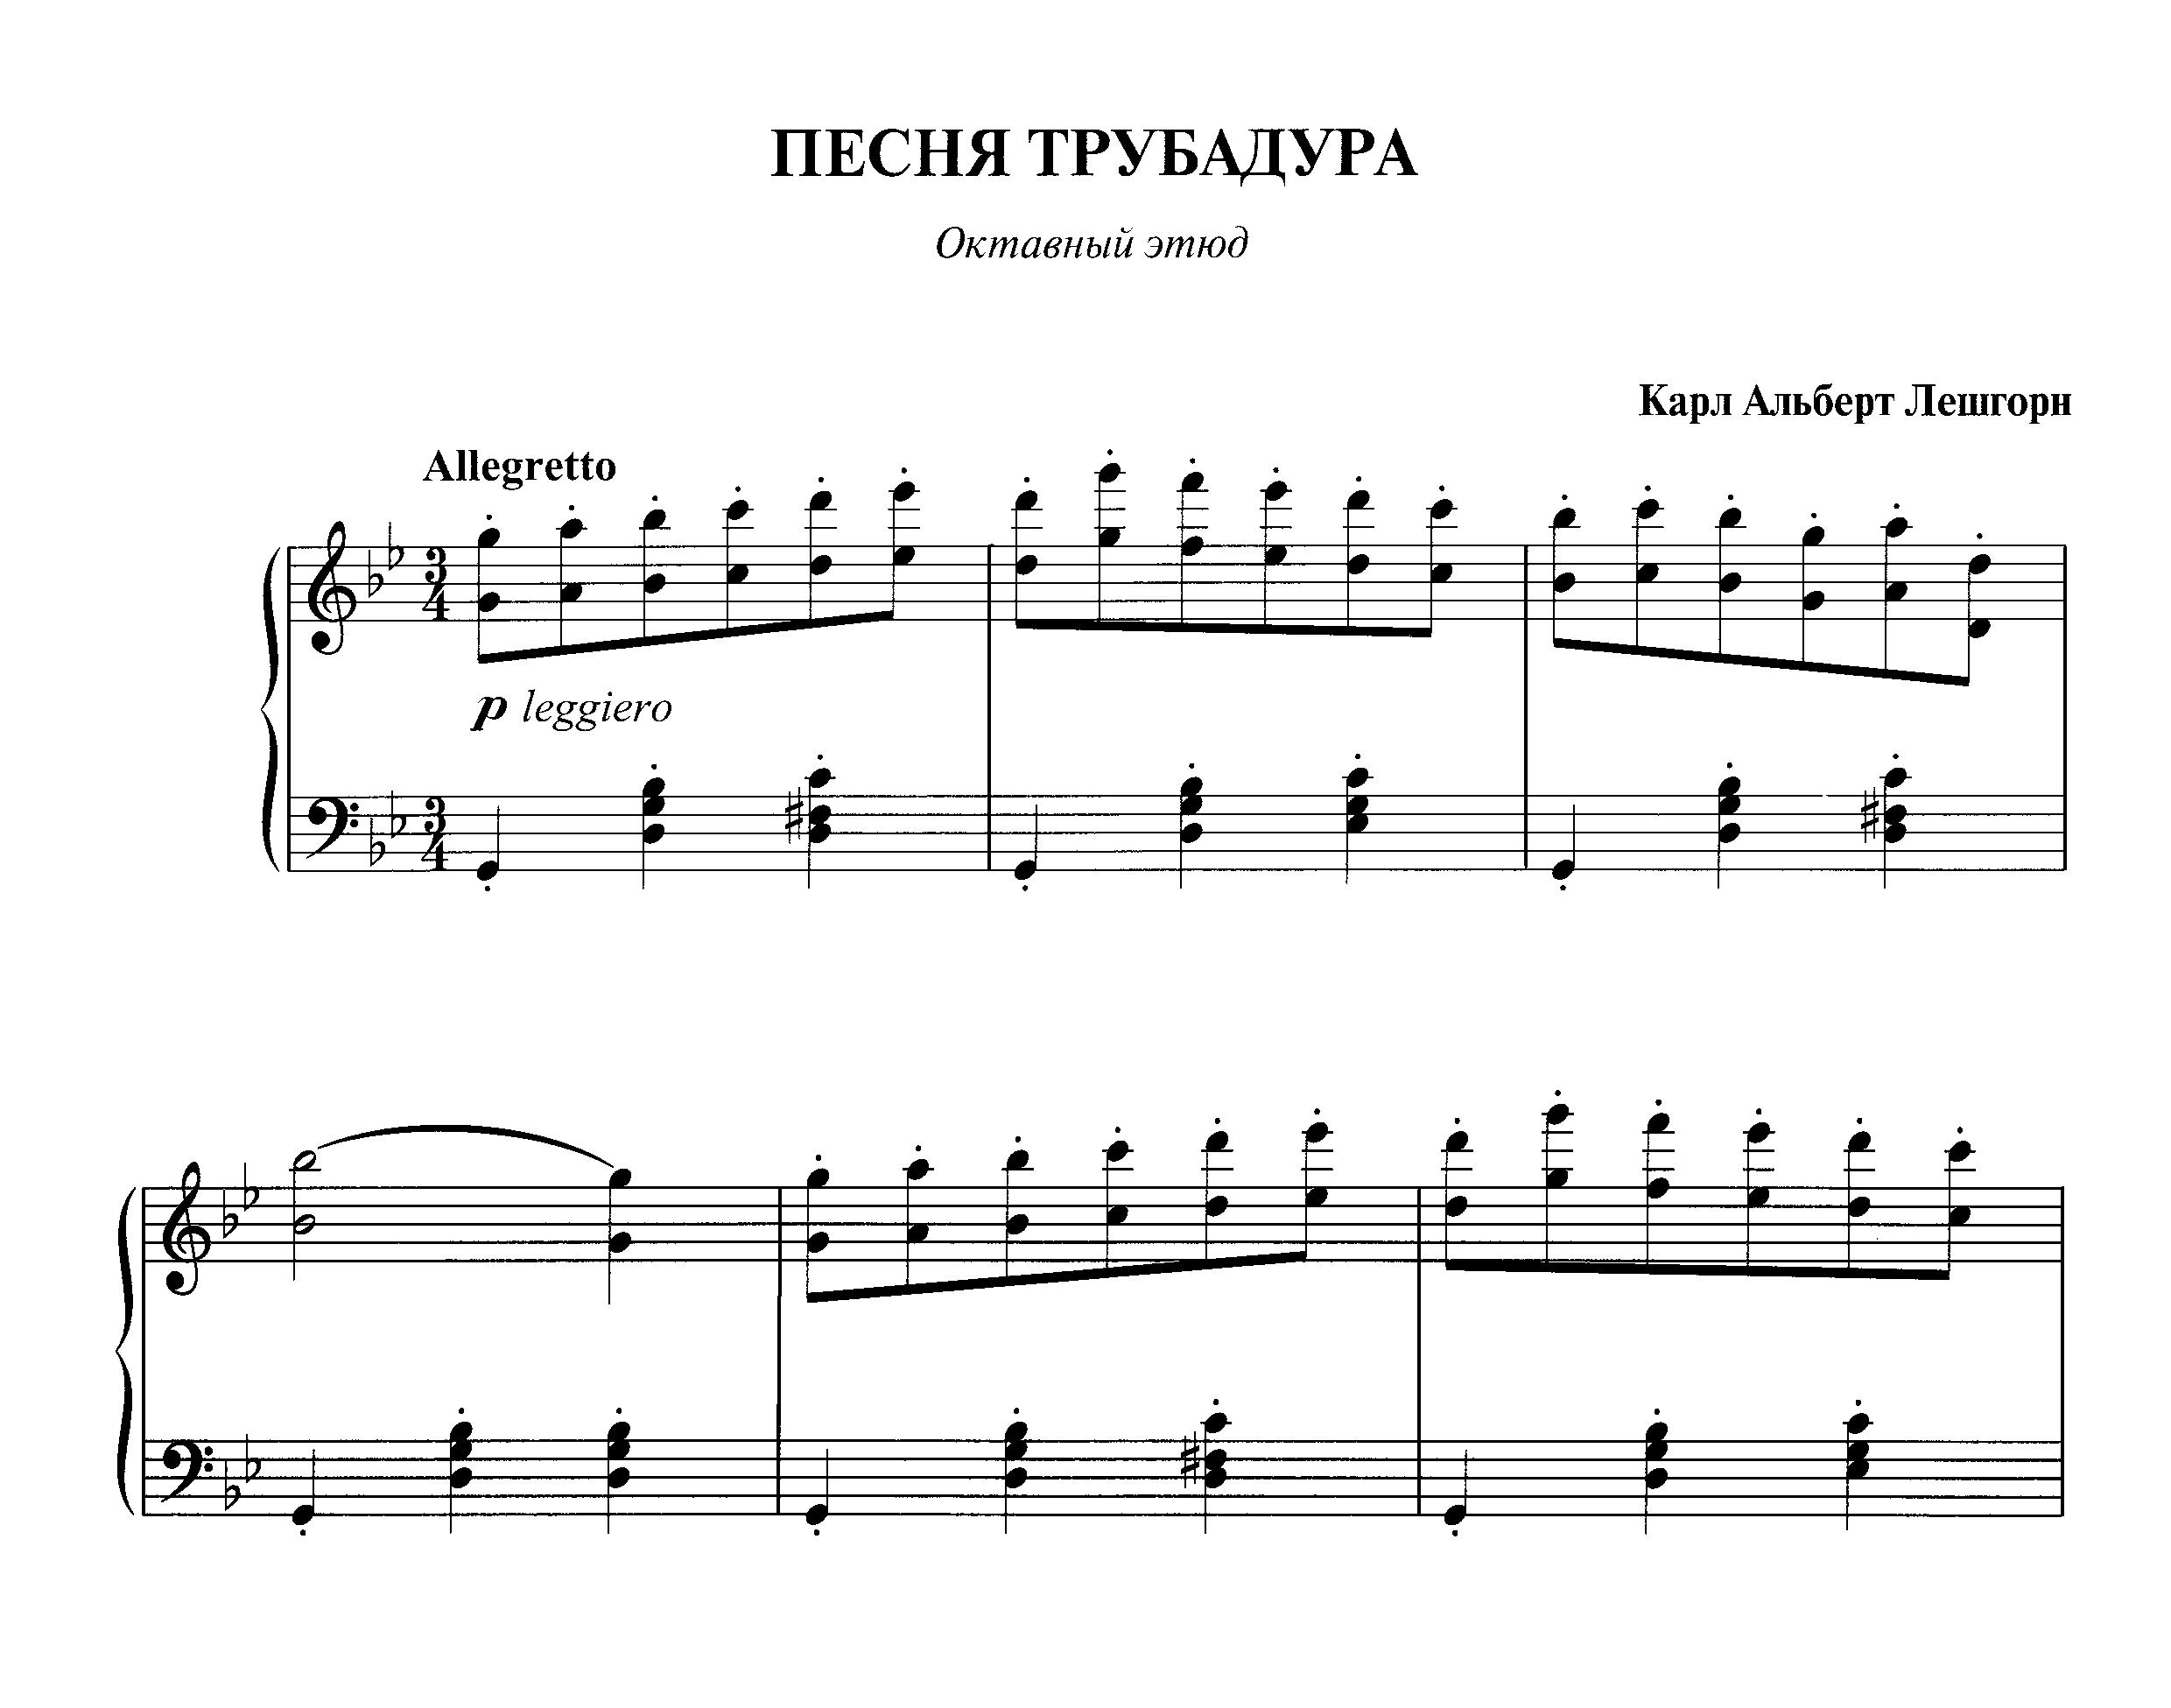 Лешгорн К. "Песня трубадура" (Октавный этюд) из сб. "Фортепианная техника в удовольствие" [6 класс]